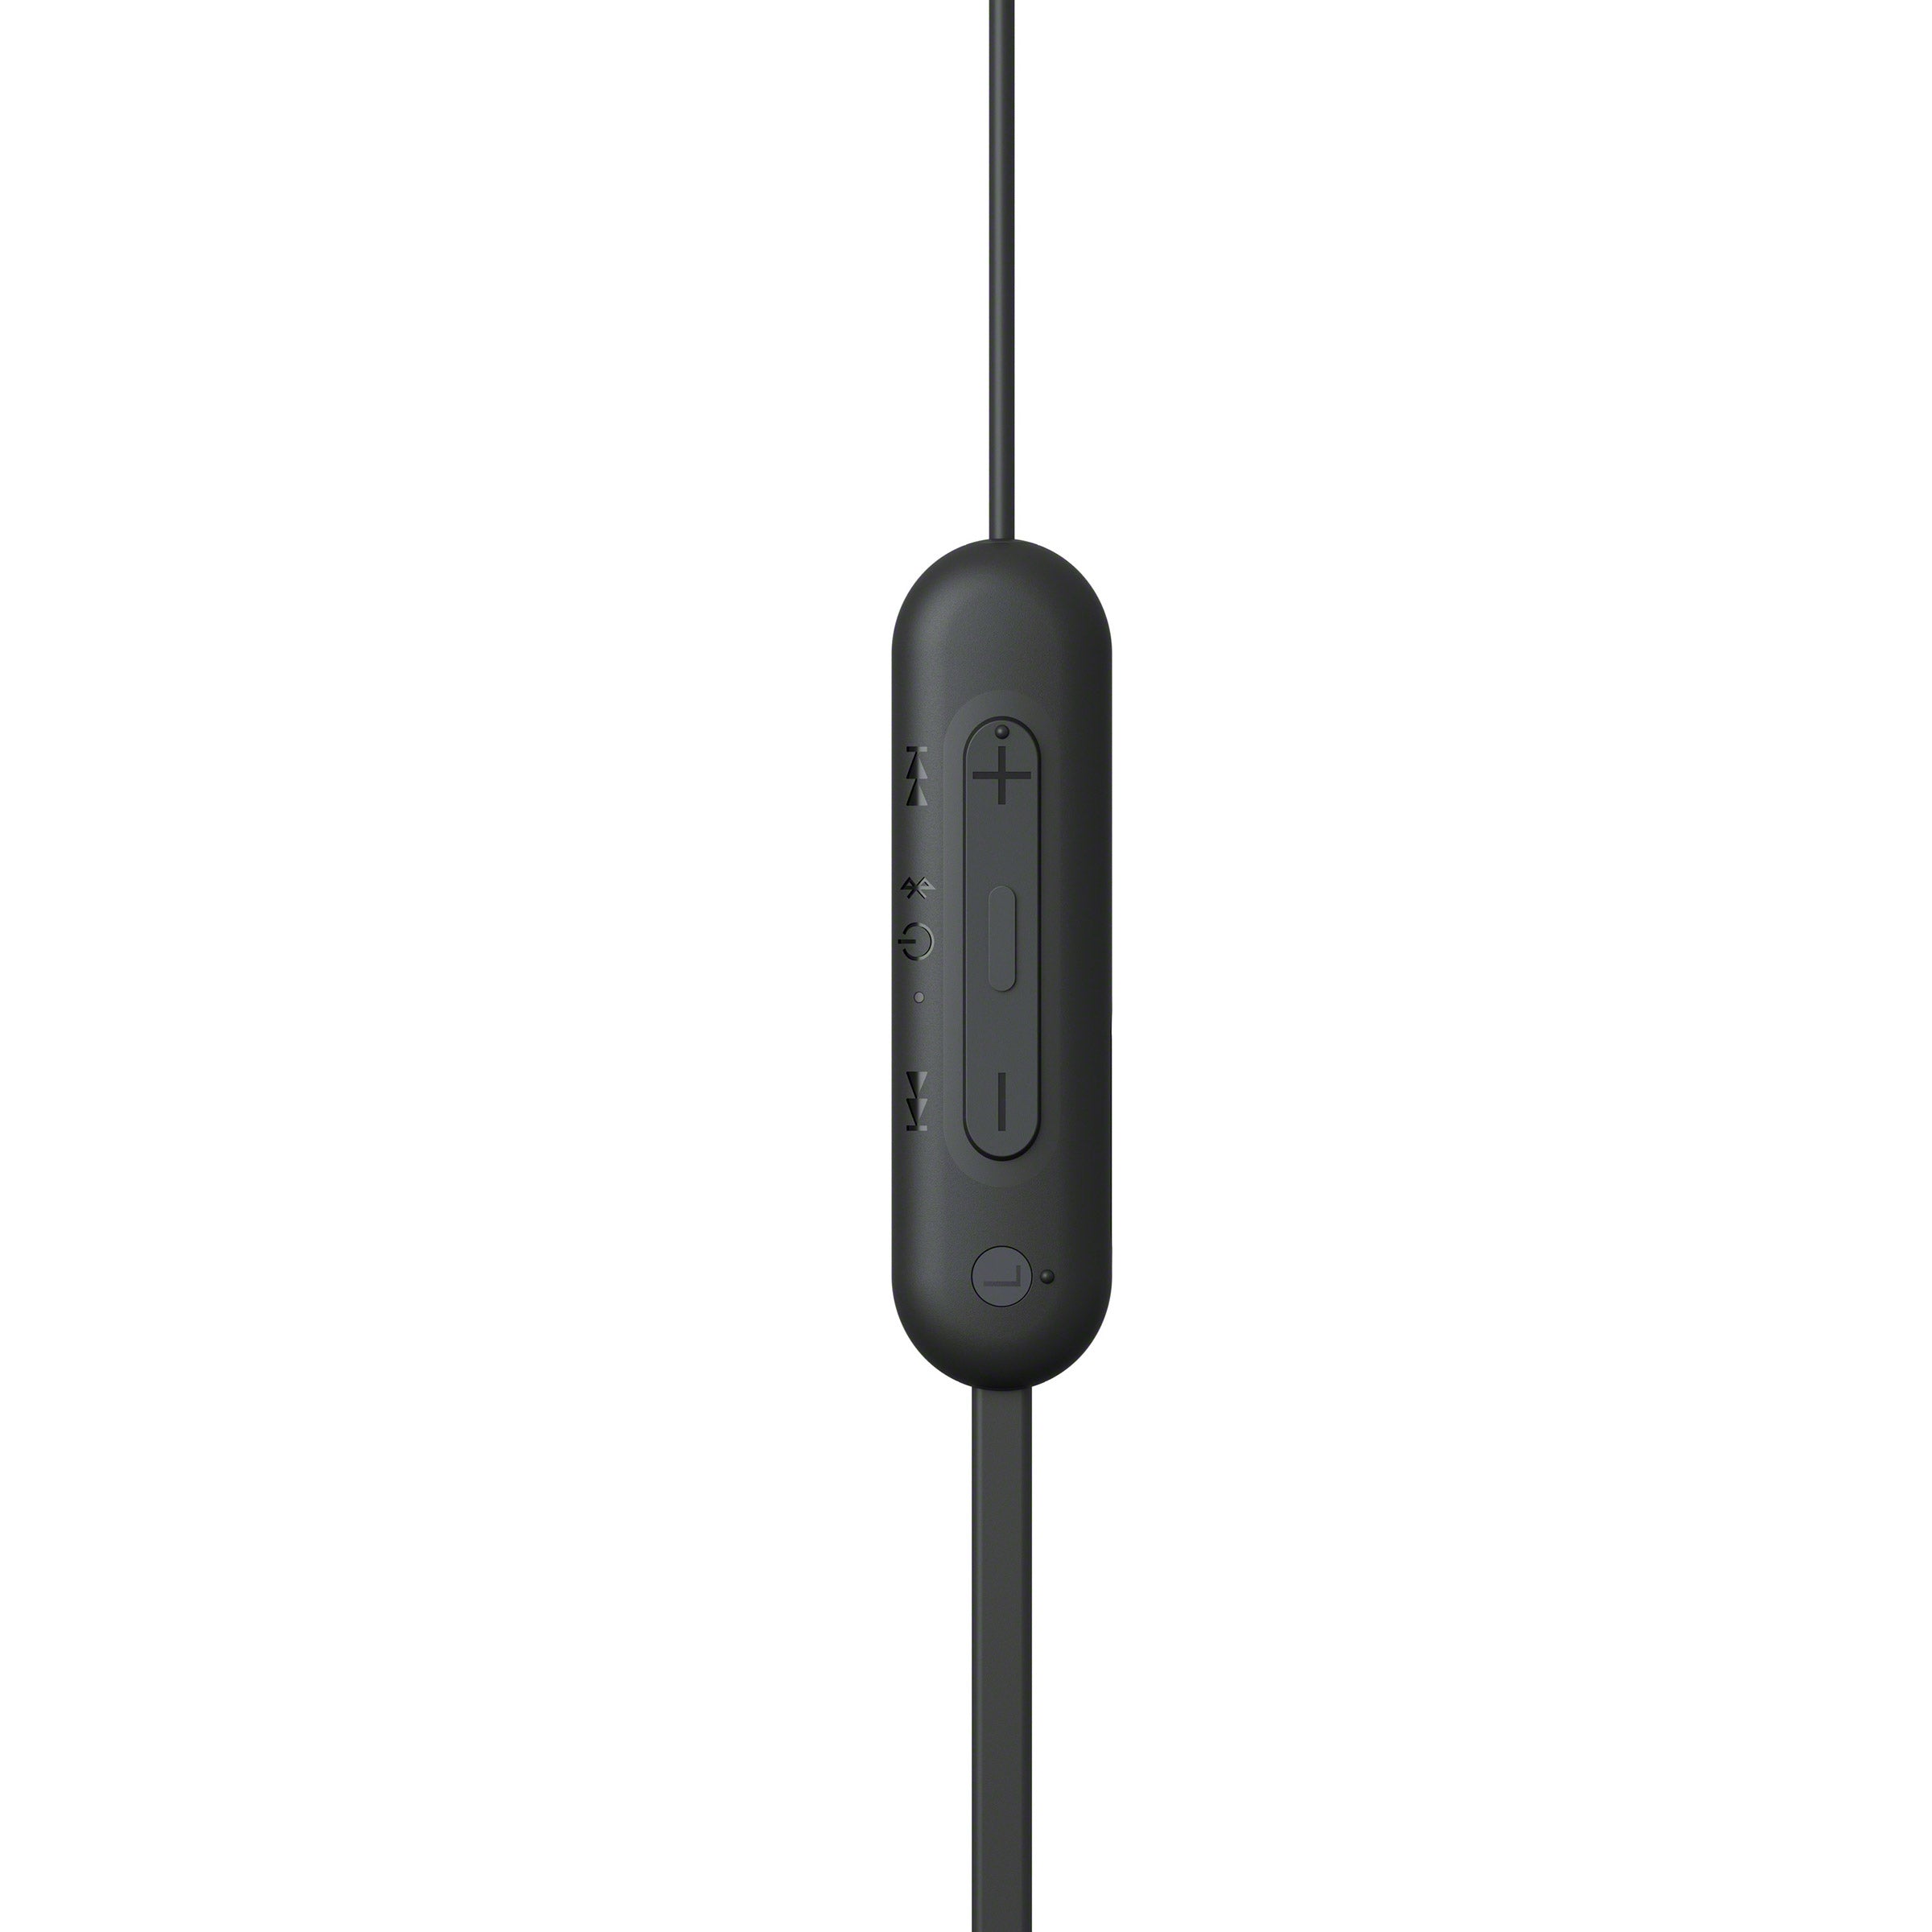 WI-C100 Wireless In-ear Headphones